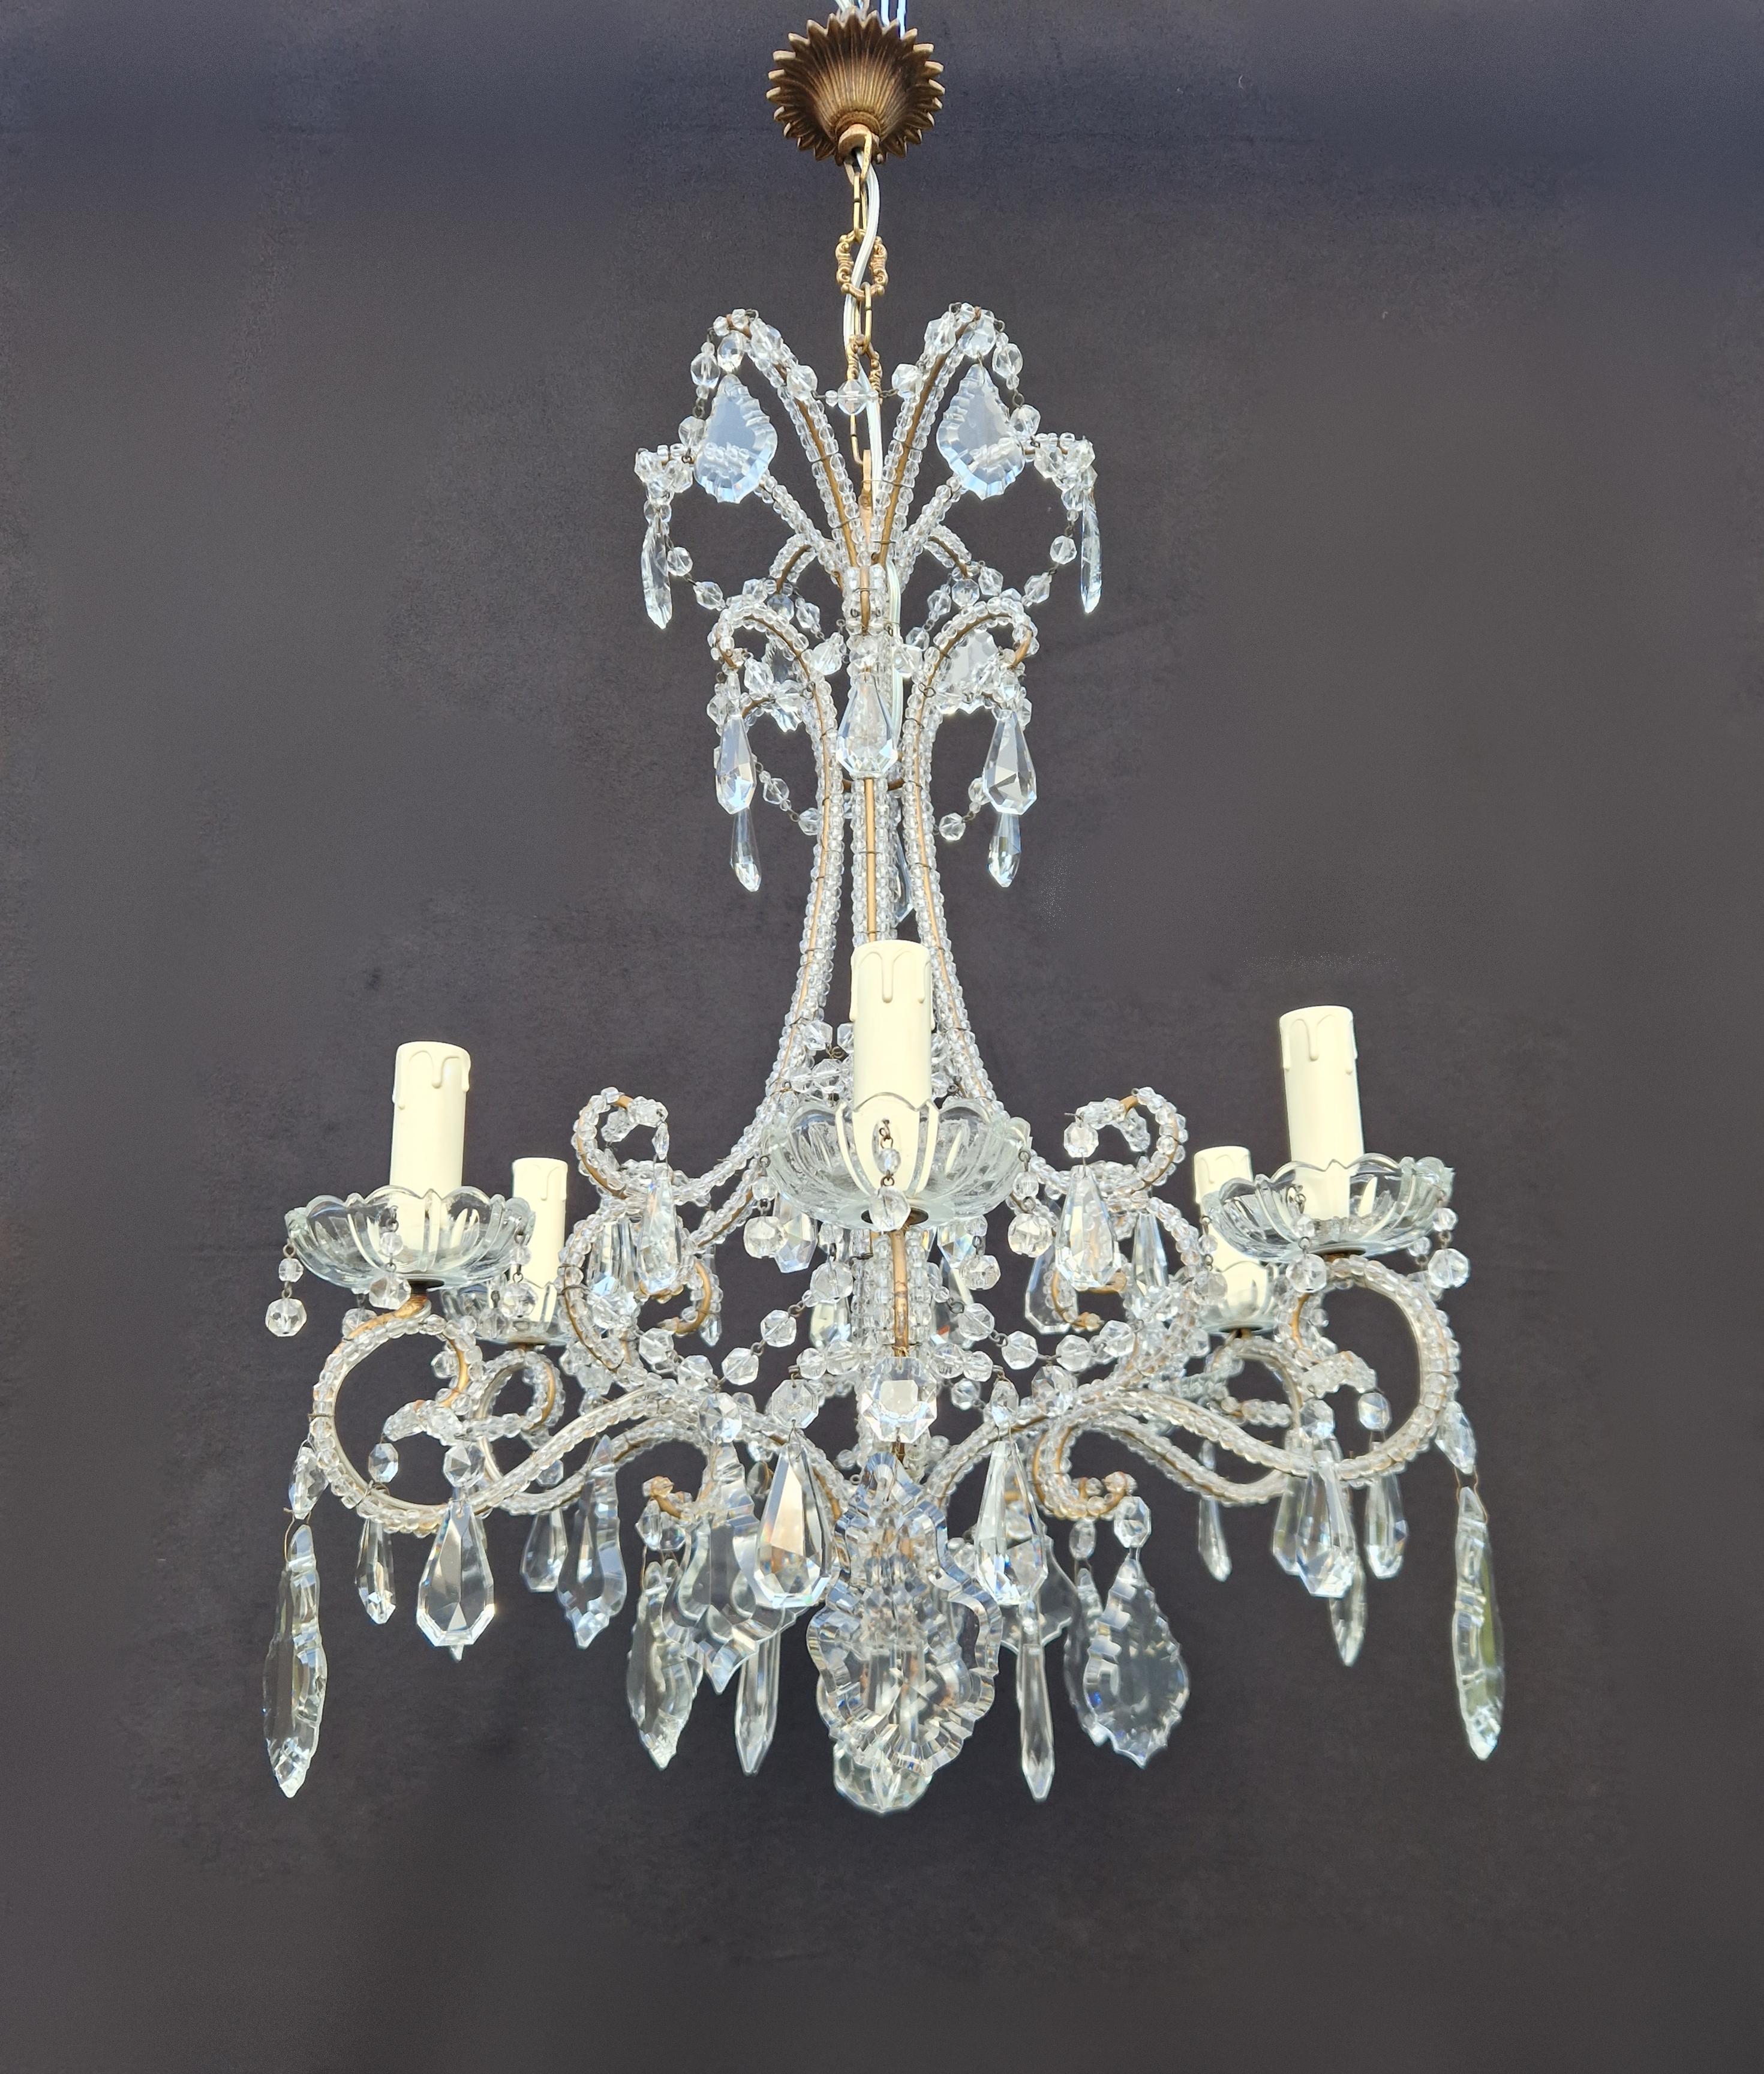 European Candelabrum Crystal Antique Chandelier Ceiling Lustre Art Nouveau